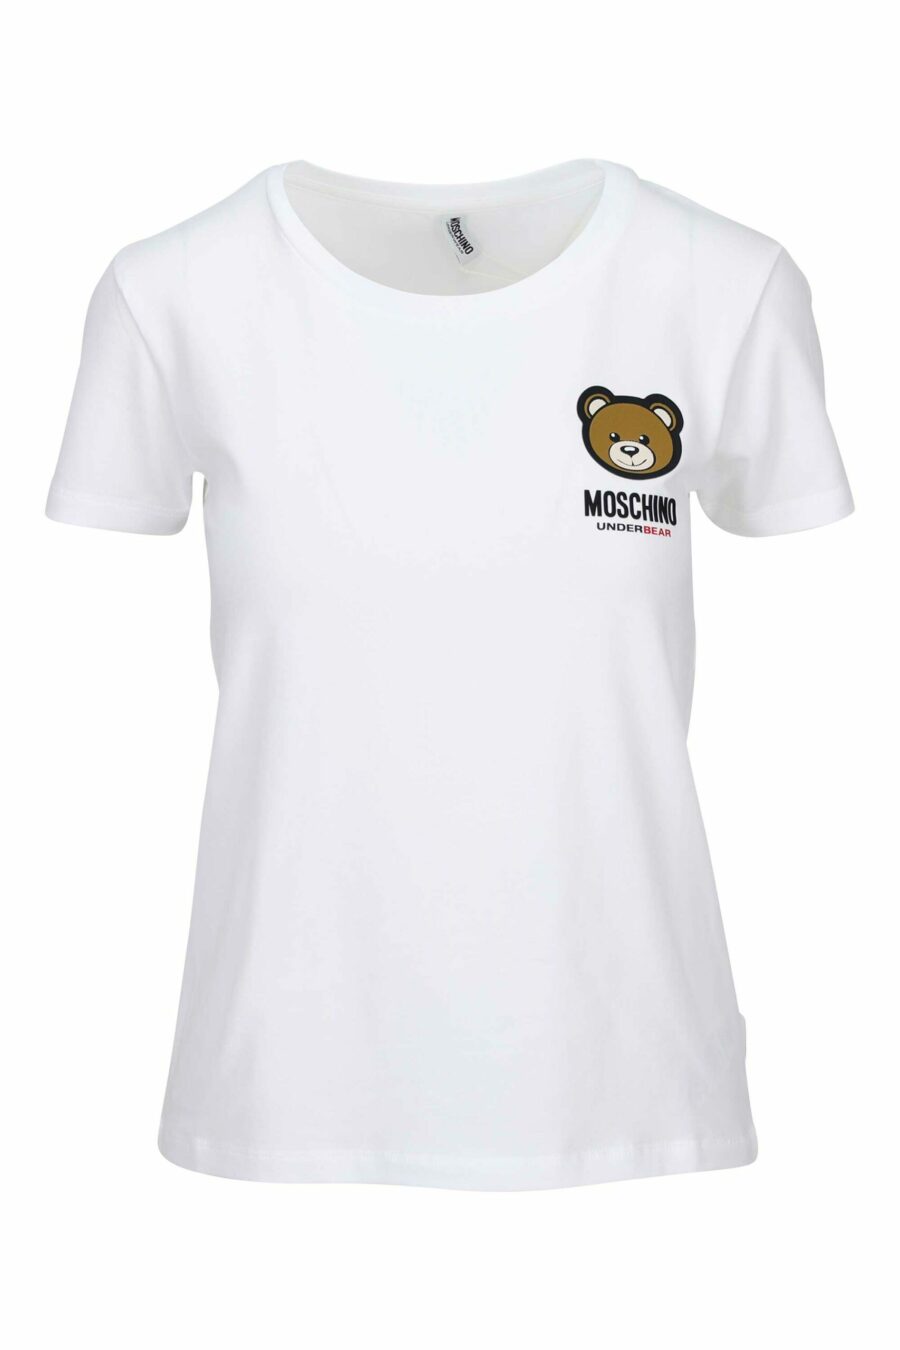 Camiseta blanca con logo parche oso "underbear" - 889316618488 scaled